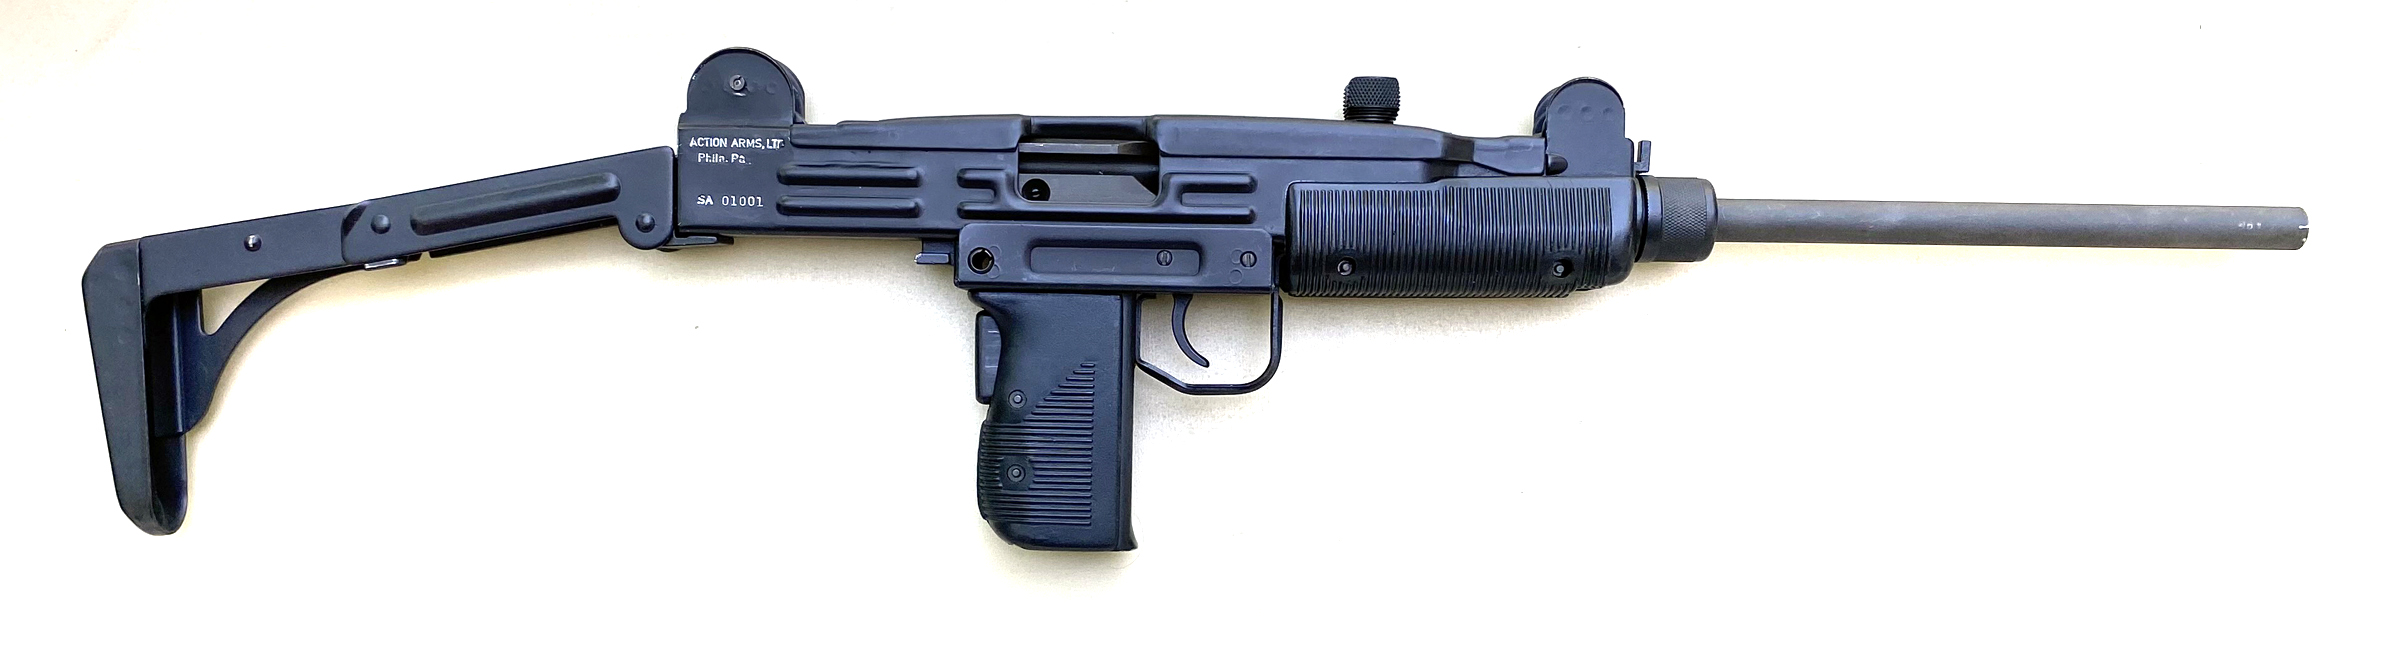 Action Arms Uzi Model A Carbine